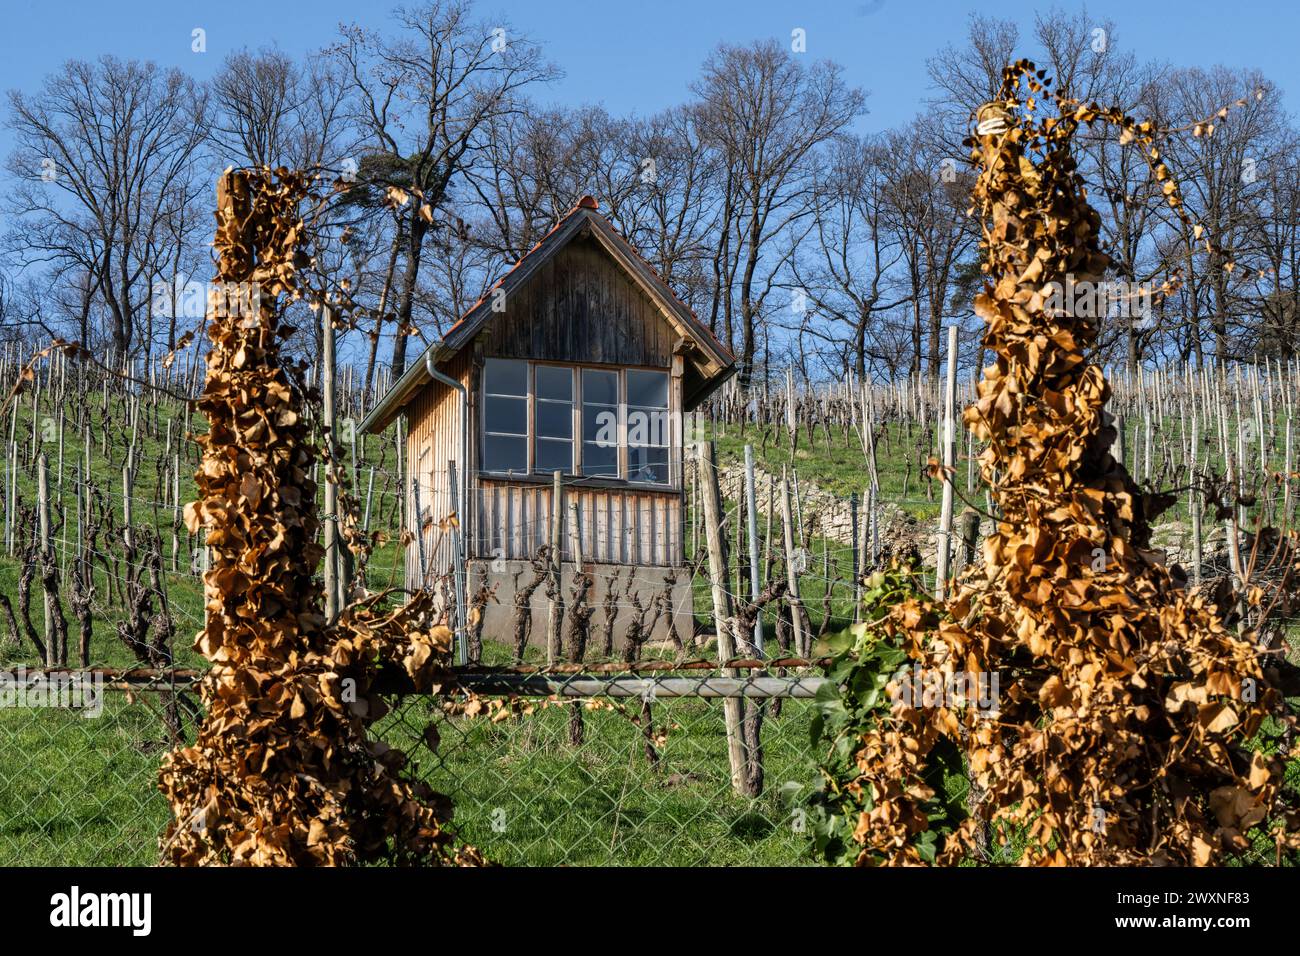 Vigneto in primavera - davanti: Recinto con foglie di vite essiccate dello scorso anno, dietro di esso coltivavano viti Foto Stock